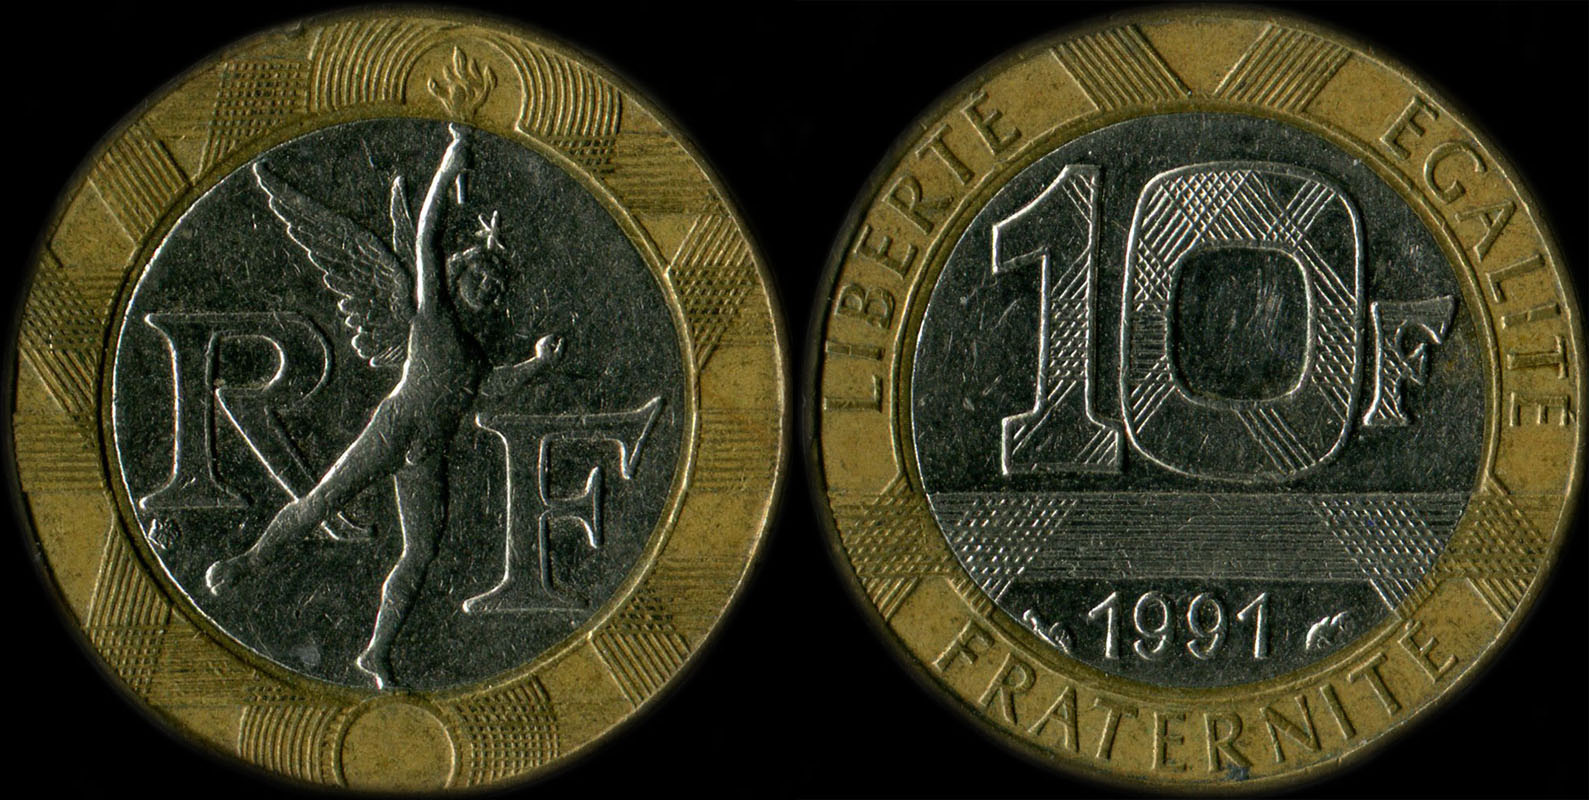 Pice de 10 francs Gnie 1991 diffrent de Pessac touche le cercle